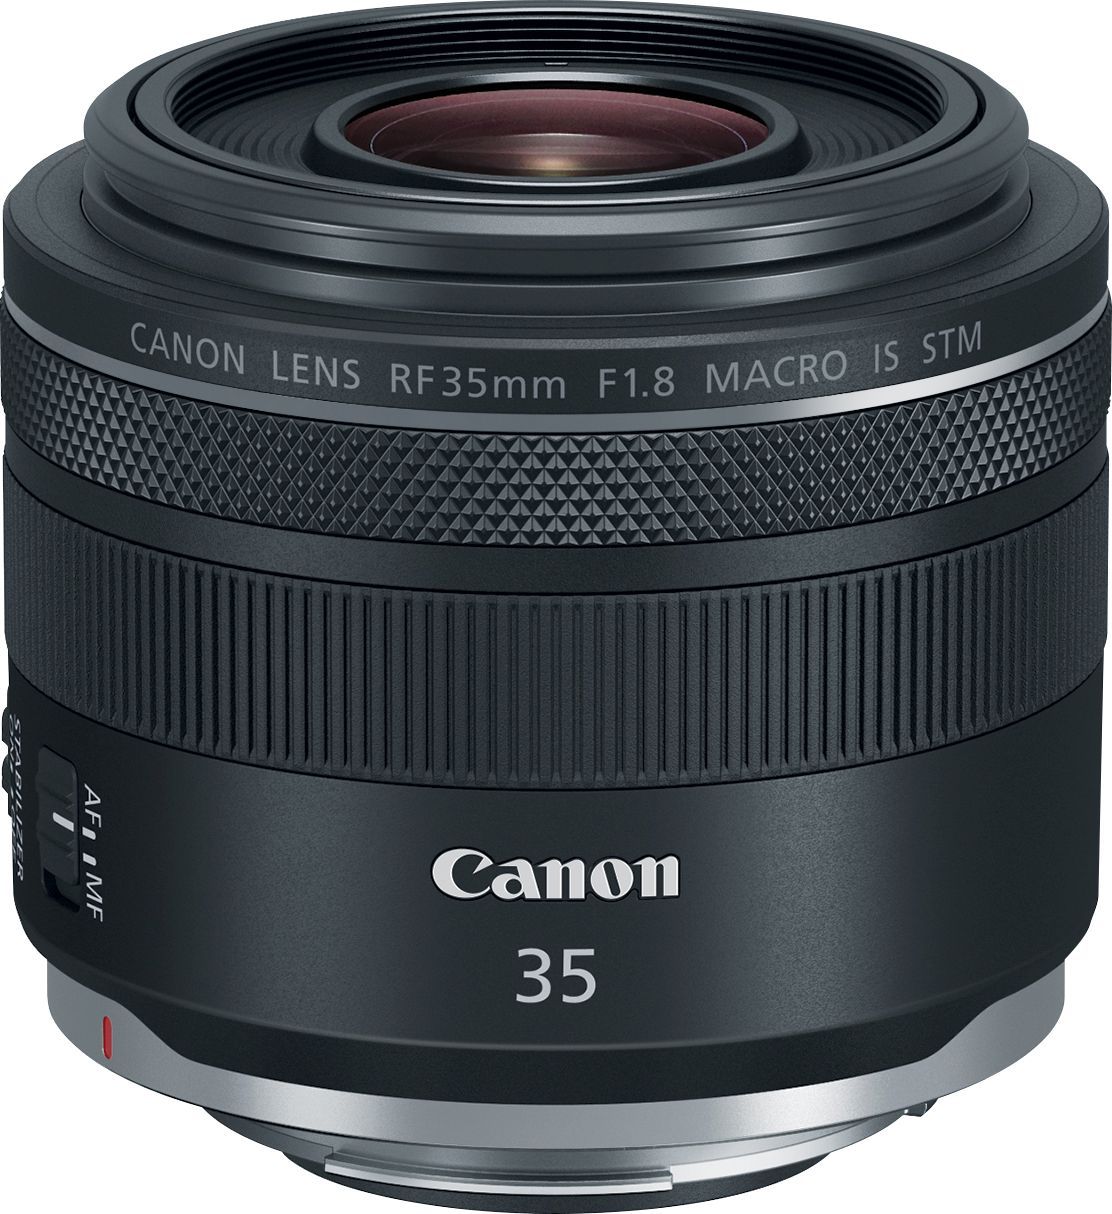 Canon RF35mm F1.8 Macro IS STM Macro Lens for EOS R-Series Cameras Black 2973C002 - Best Buy | Best Buy U.S.